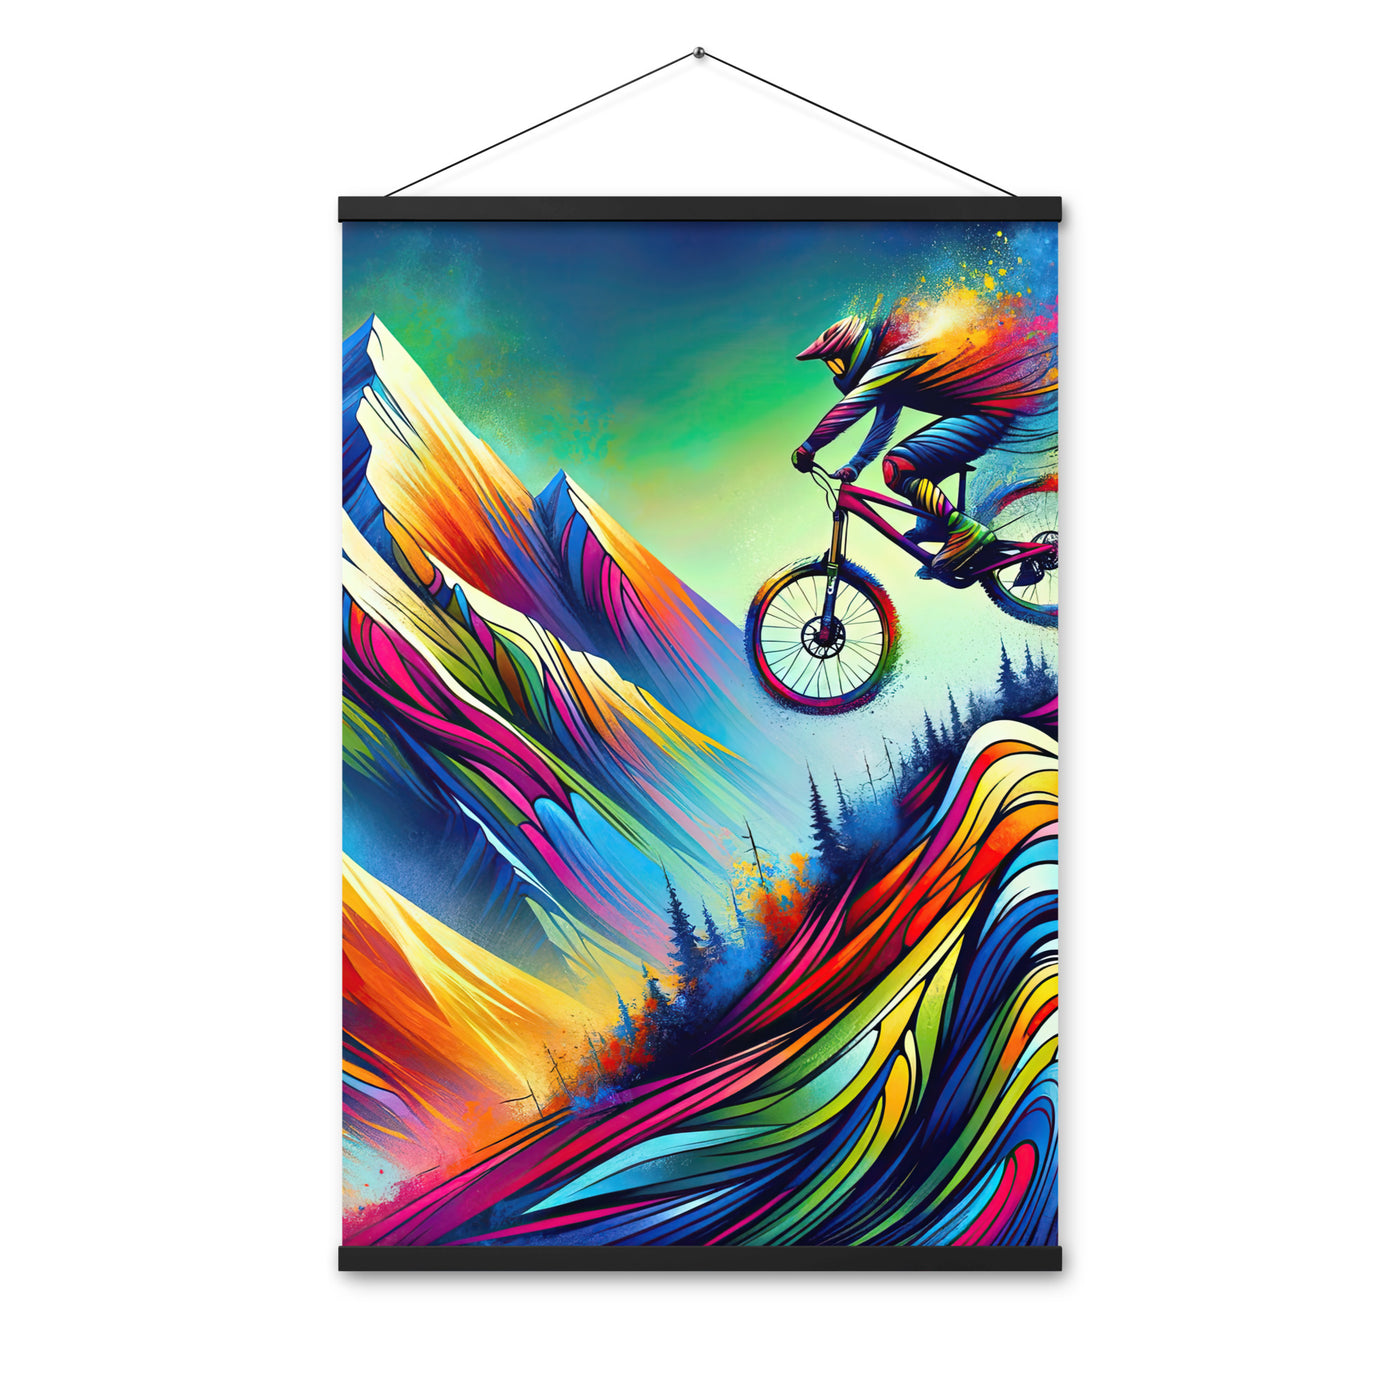 Mountainbiker in farbenfroher Alpenkulisse mit abstraktem Touch (M) - Premium Poster mit Aufhängung xxx yyy zzz 61 x 91.4 cm